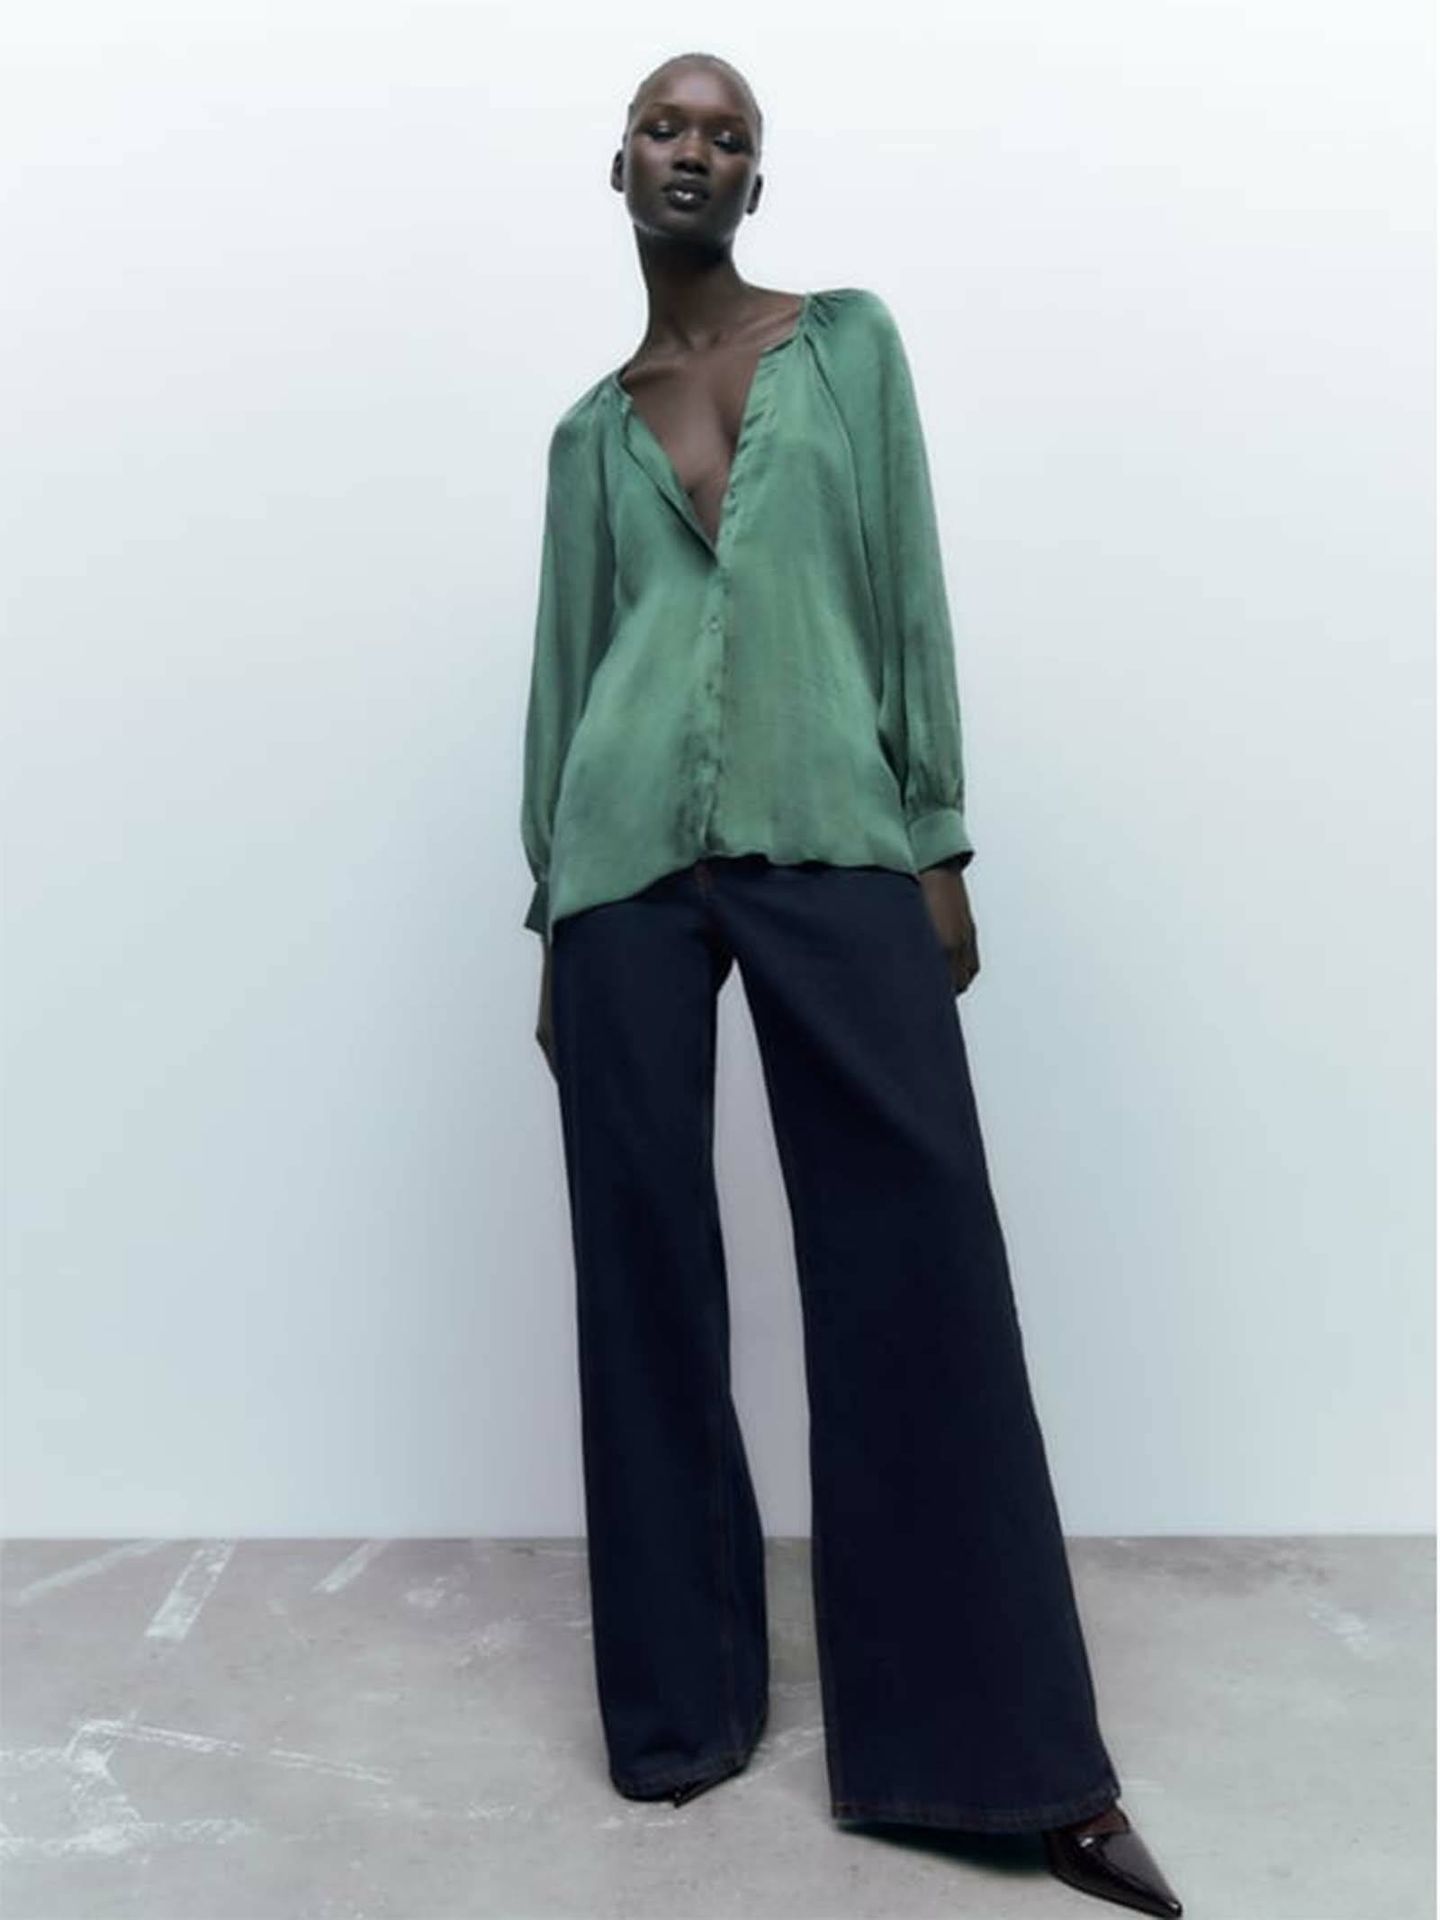 Las 7 blusas de las novedades de Zara para mujeres de a más 60